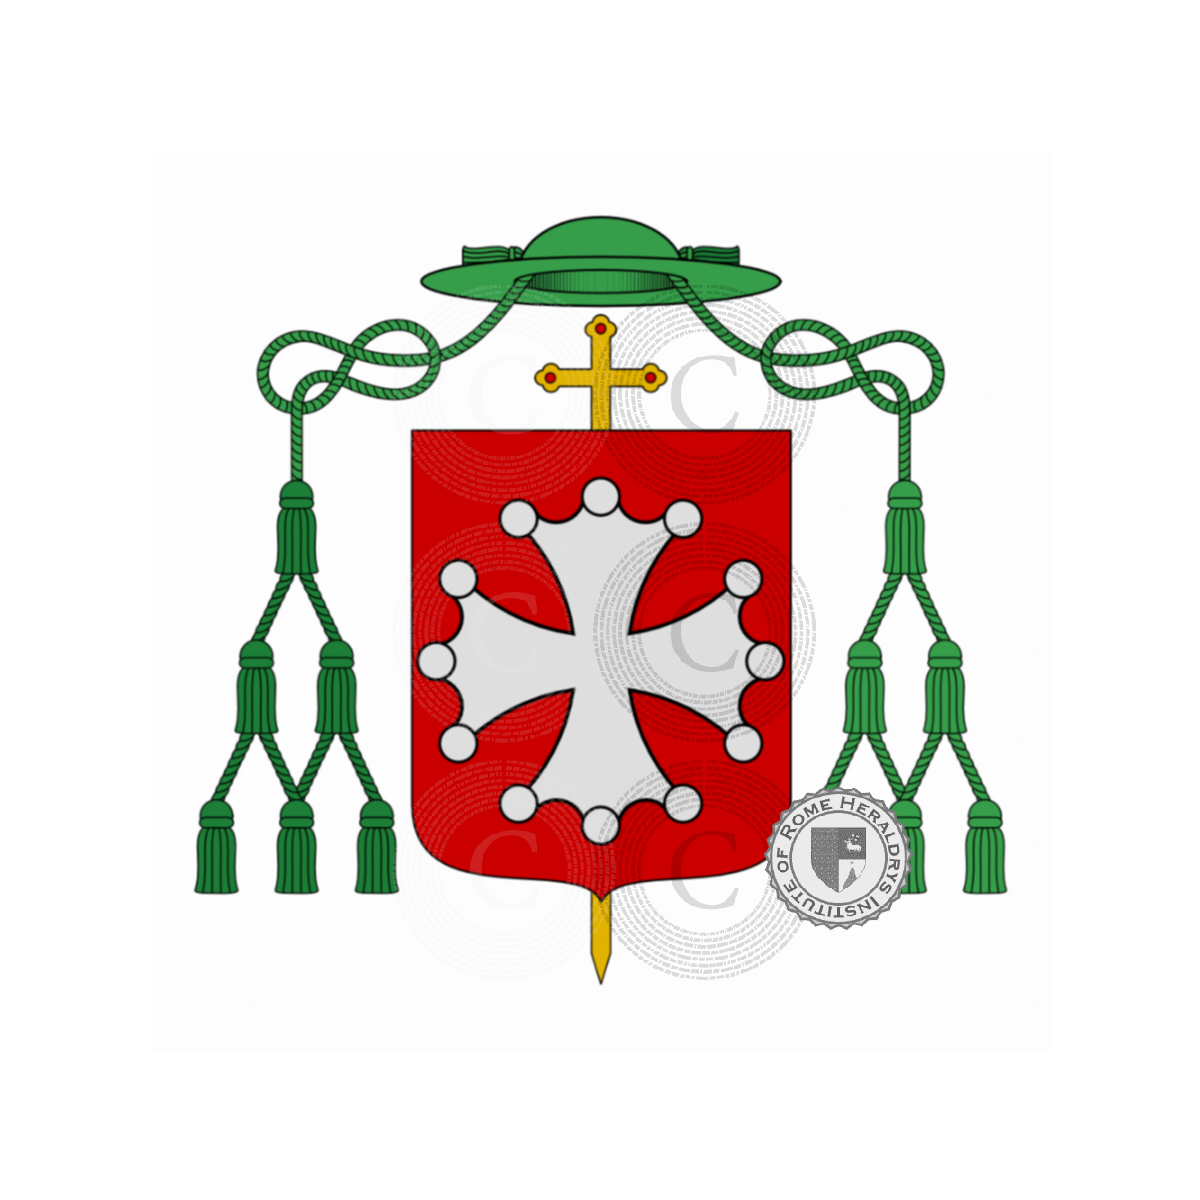 Wappen der FamiliePalladini, Paladino,Palladini